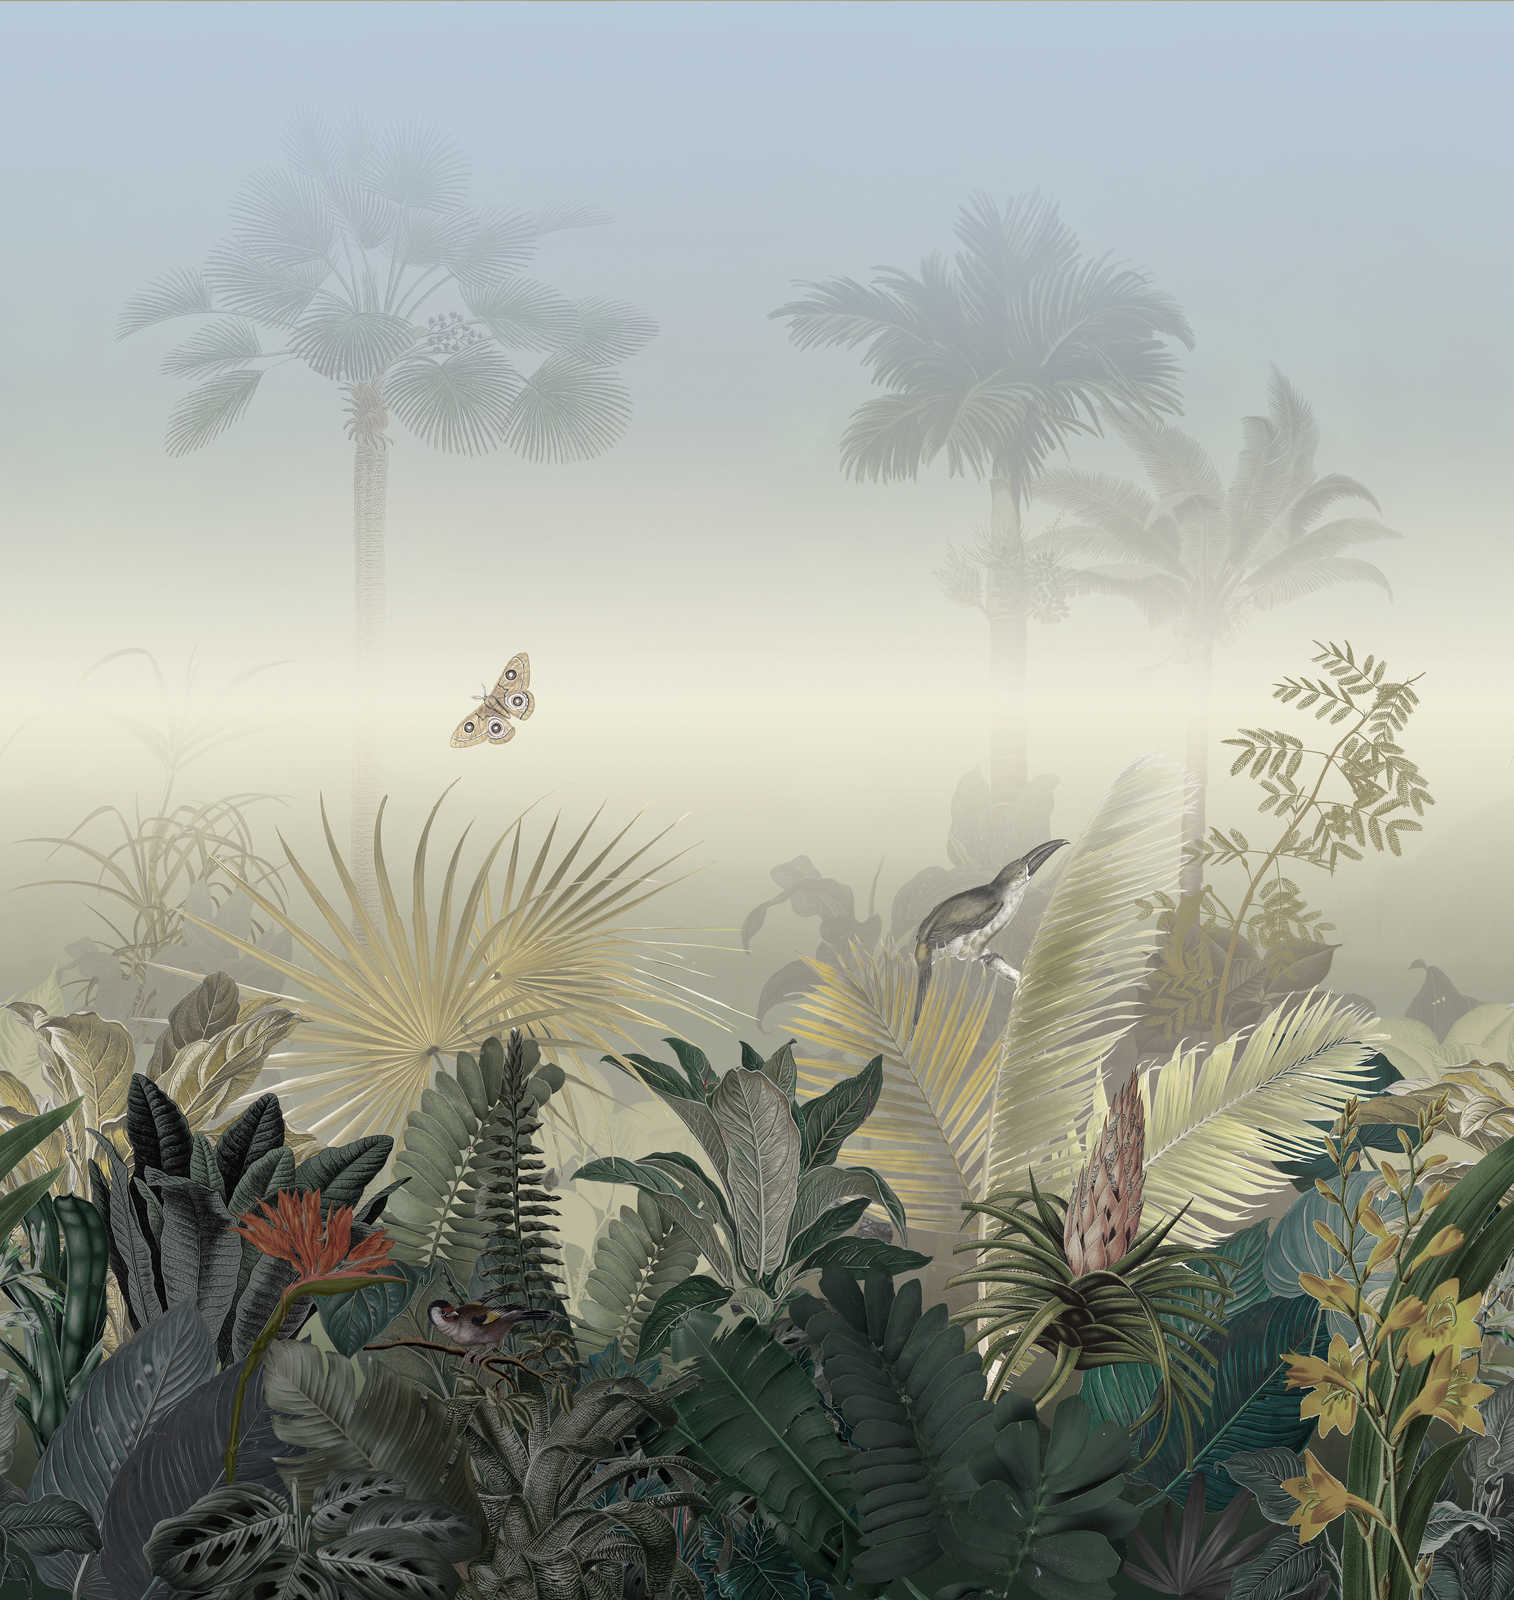             Papel pintado con motivo de selva con animales en la niebla - colorido, azul, verde
        